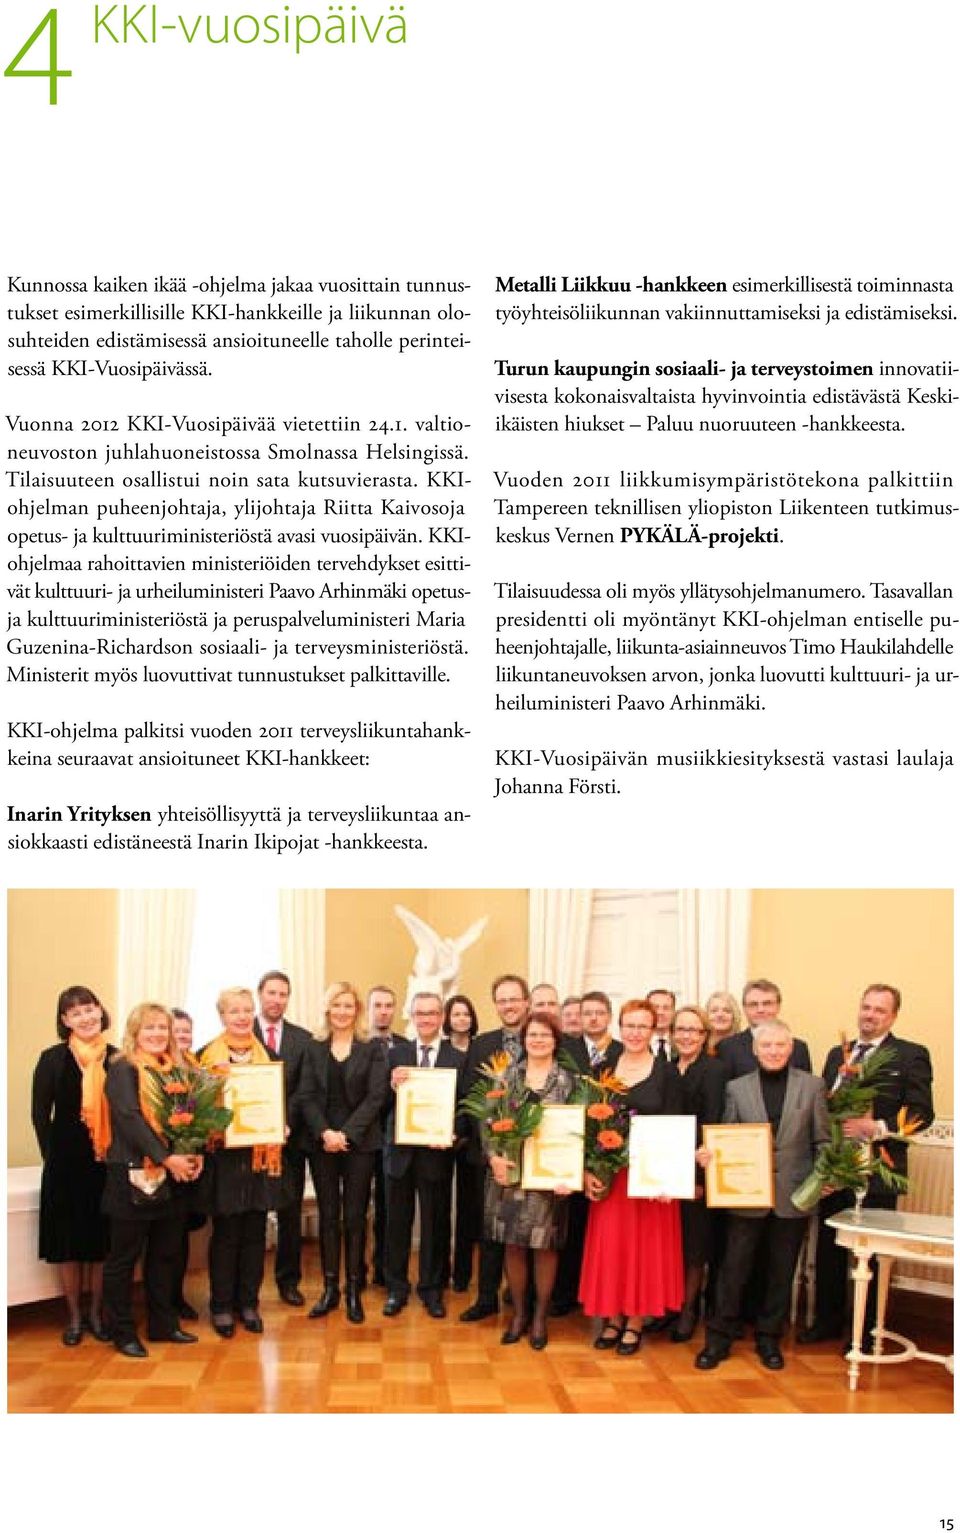 KKIohjelman puheenjohtaja, ylijohtaja Riitta Kaivosoja opetus- ja kulttuuriministeriöstä avasi vuosipäivän.